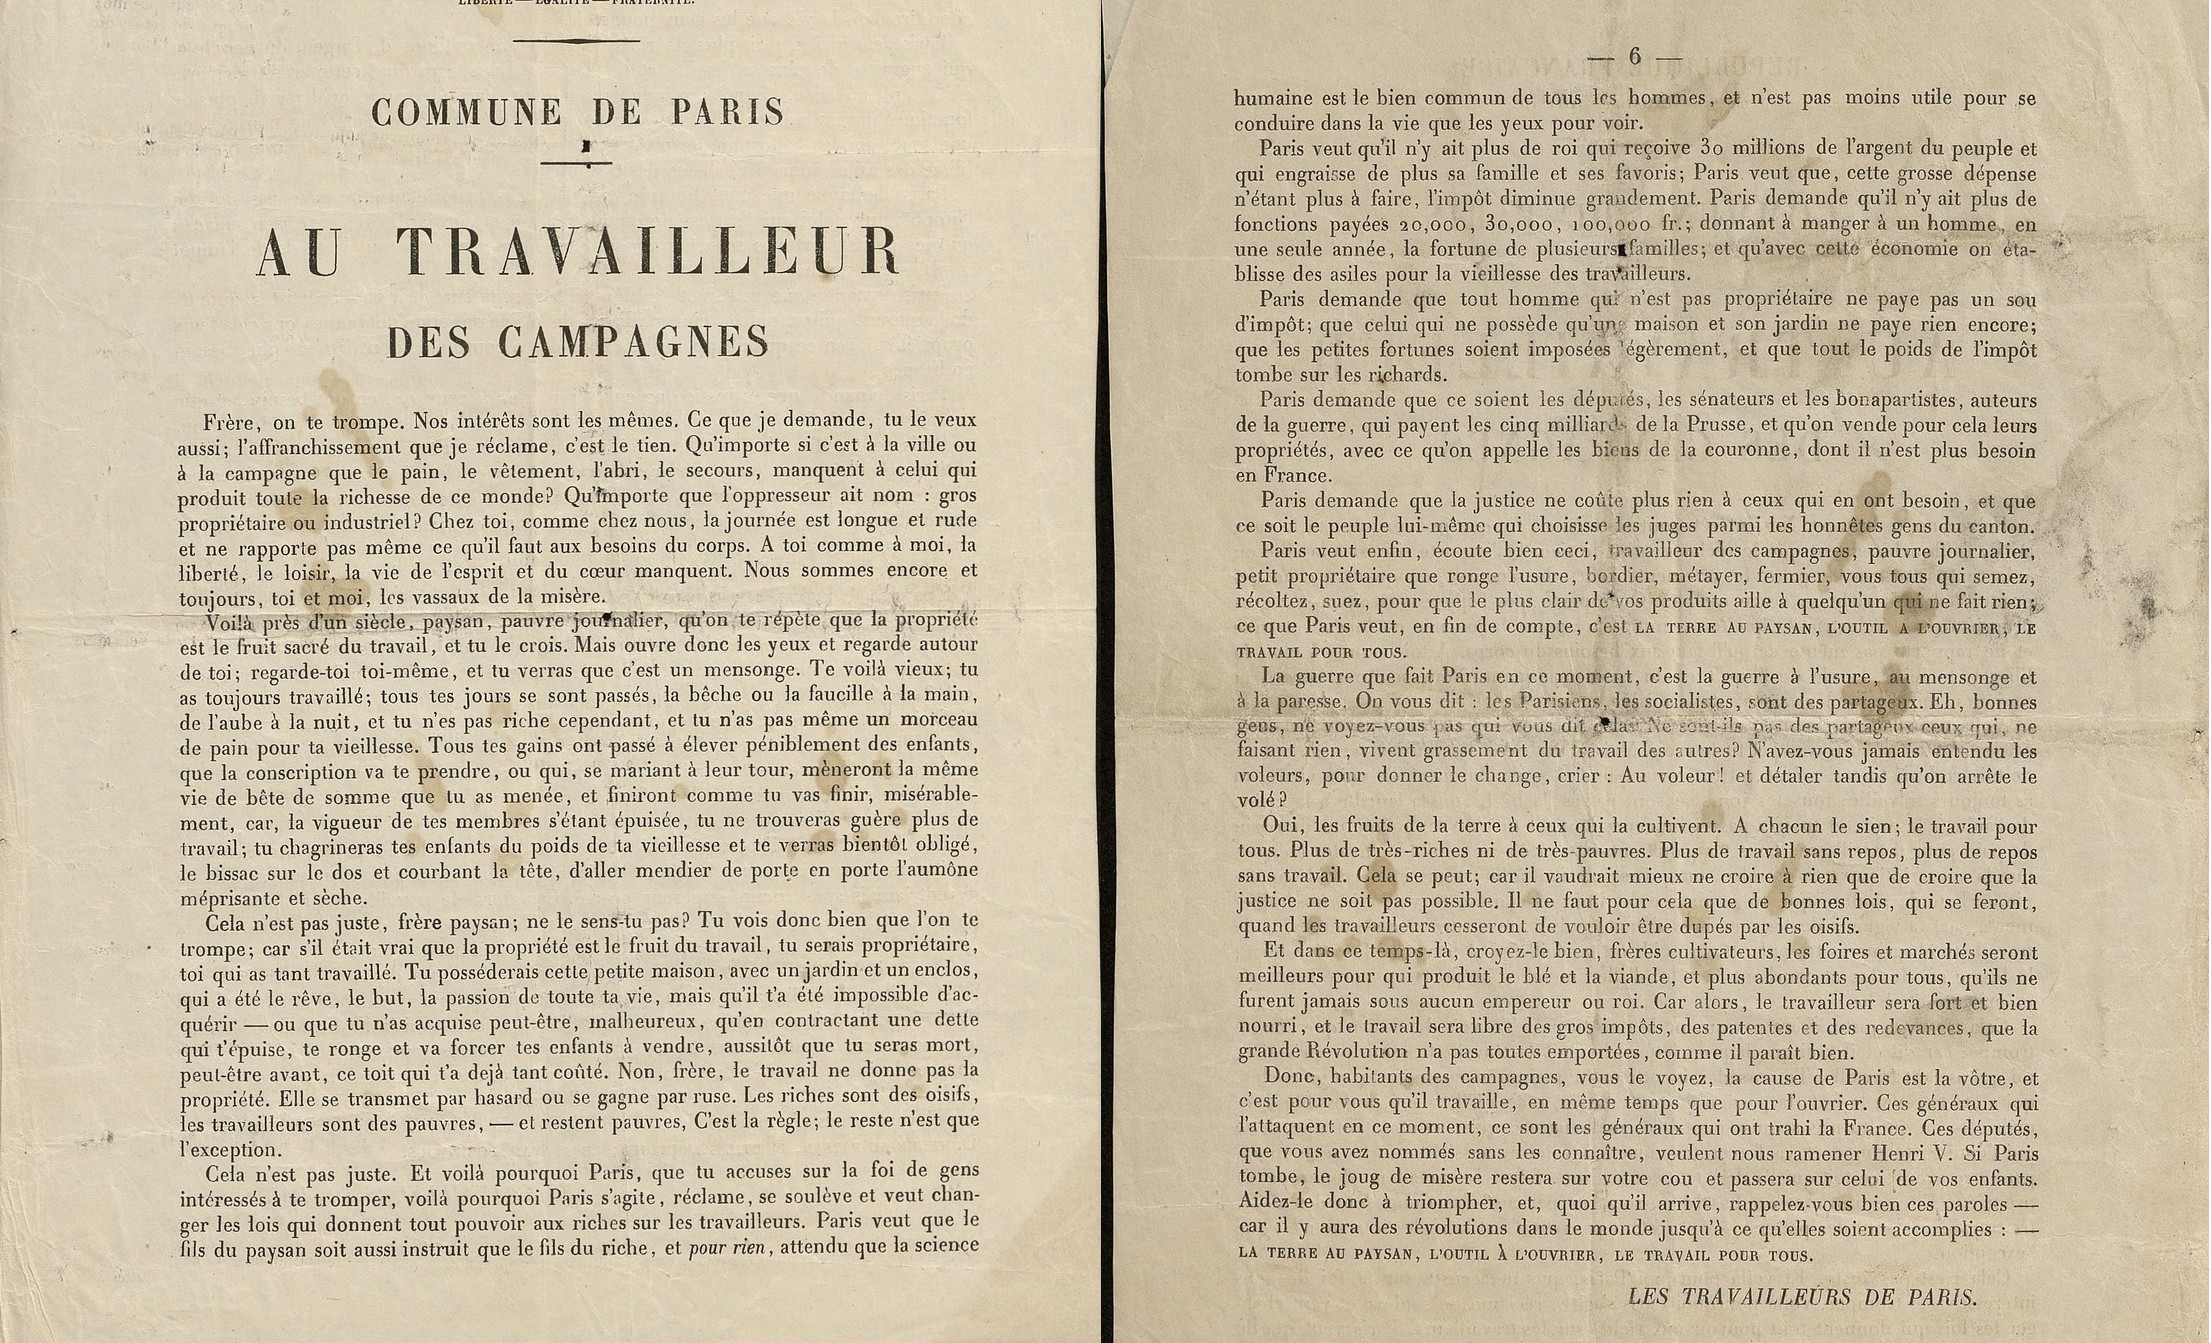 « Au peuple des campagnes », par André Léo, 28 avril 1871. Archives de Paris, 1AZ 18, dossier 166